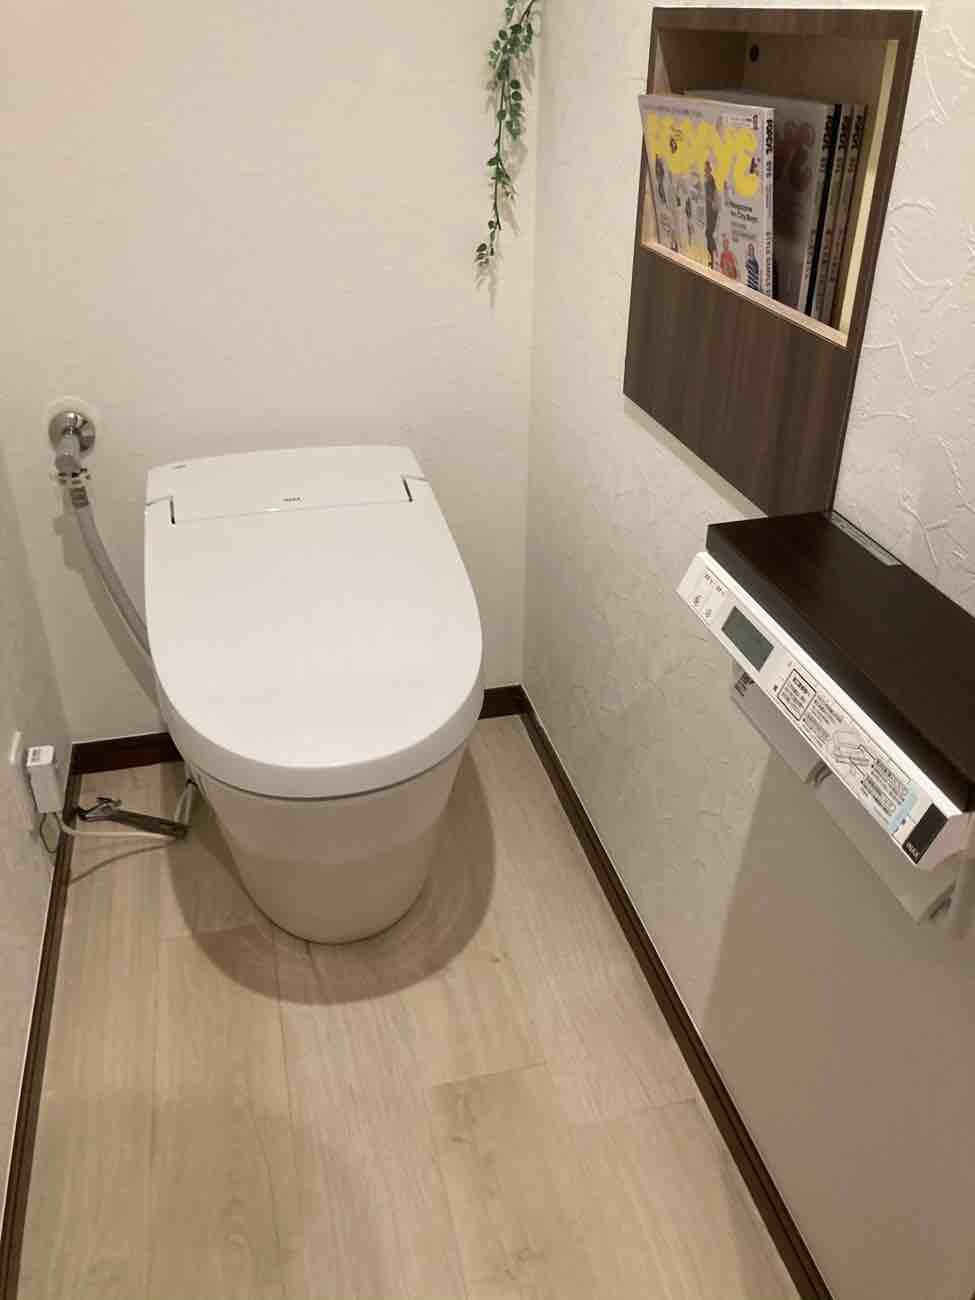 【埼玉県三郷市】S様邸トイレ交換工事が完了しました。LIXILサティスS 画像